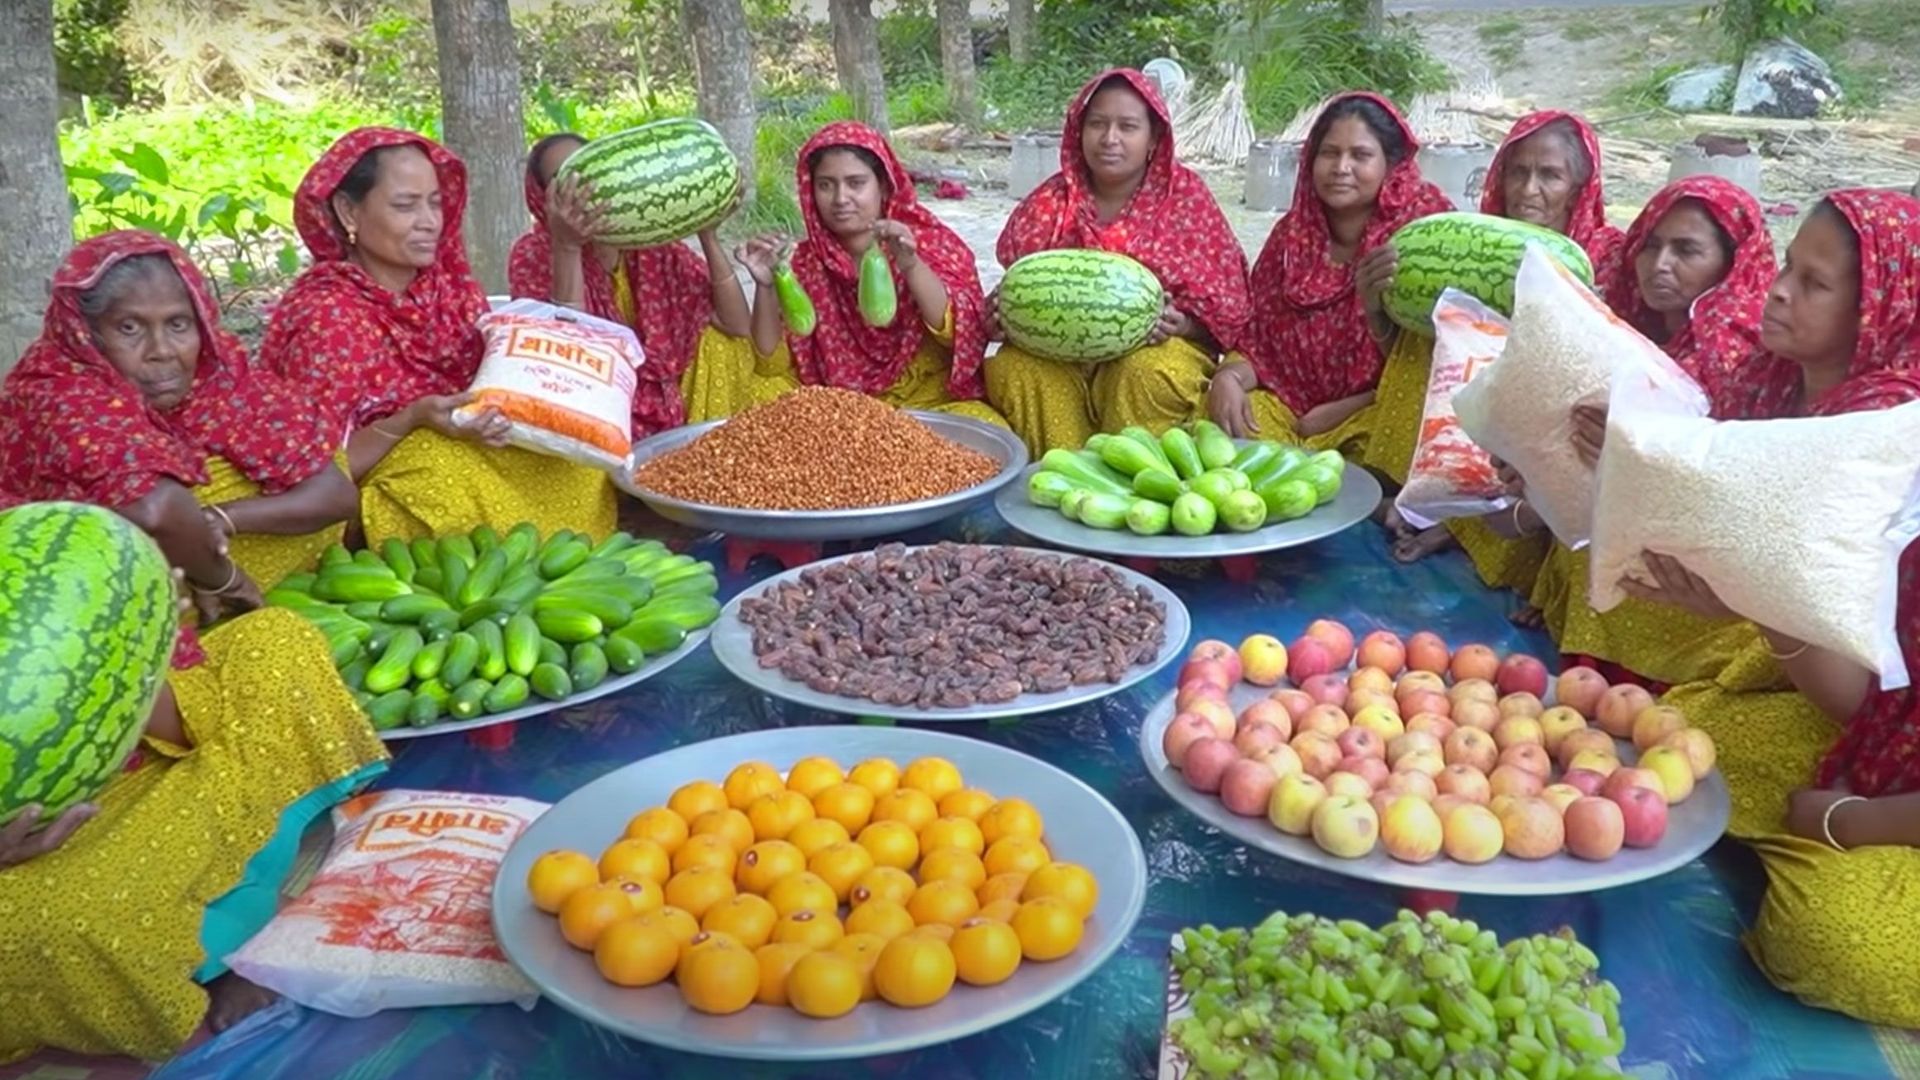 Ce "Village YouTube" du Bangladesh possède des millions de followers.